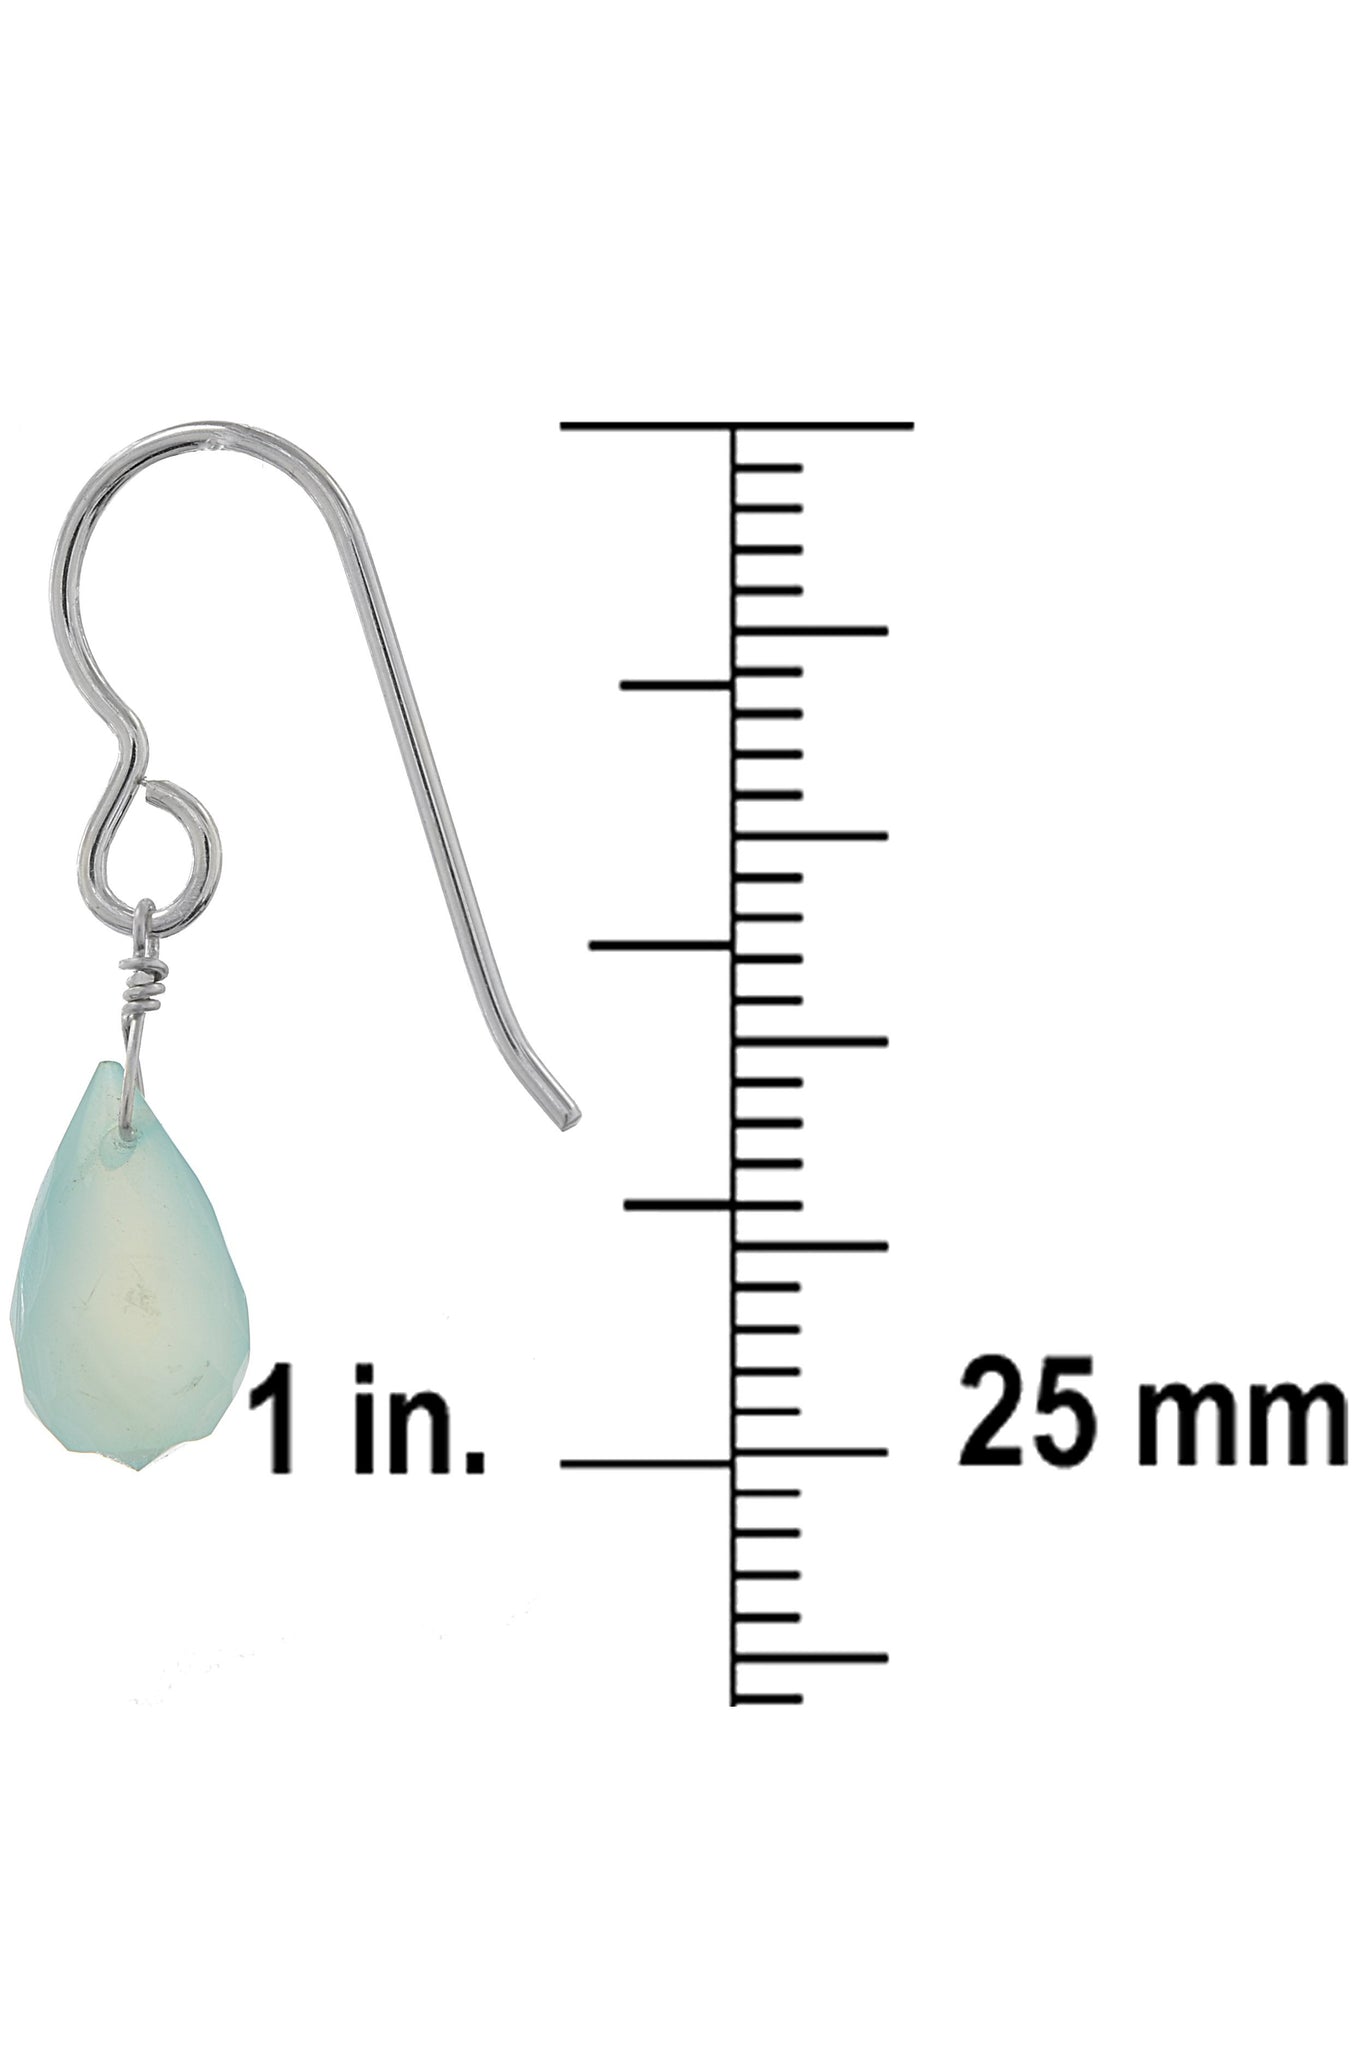 Baby Blue Chalcedony Gemstone Drop Dainty Earrings